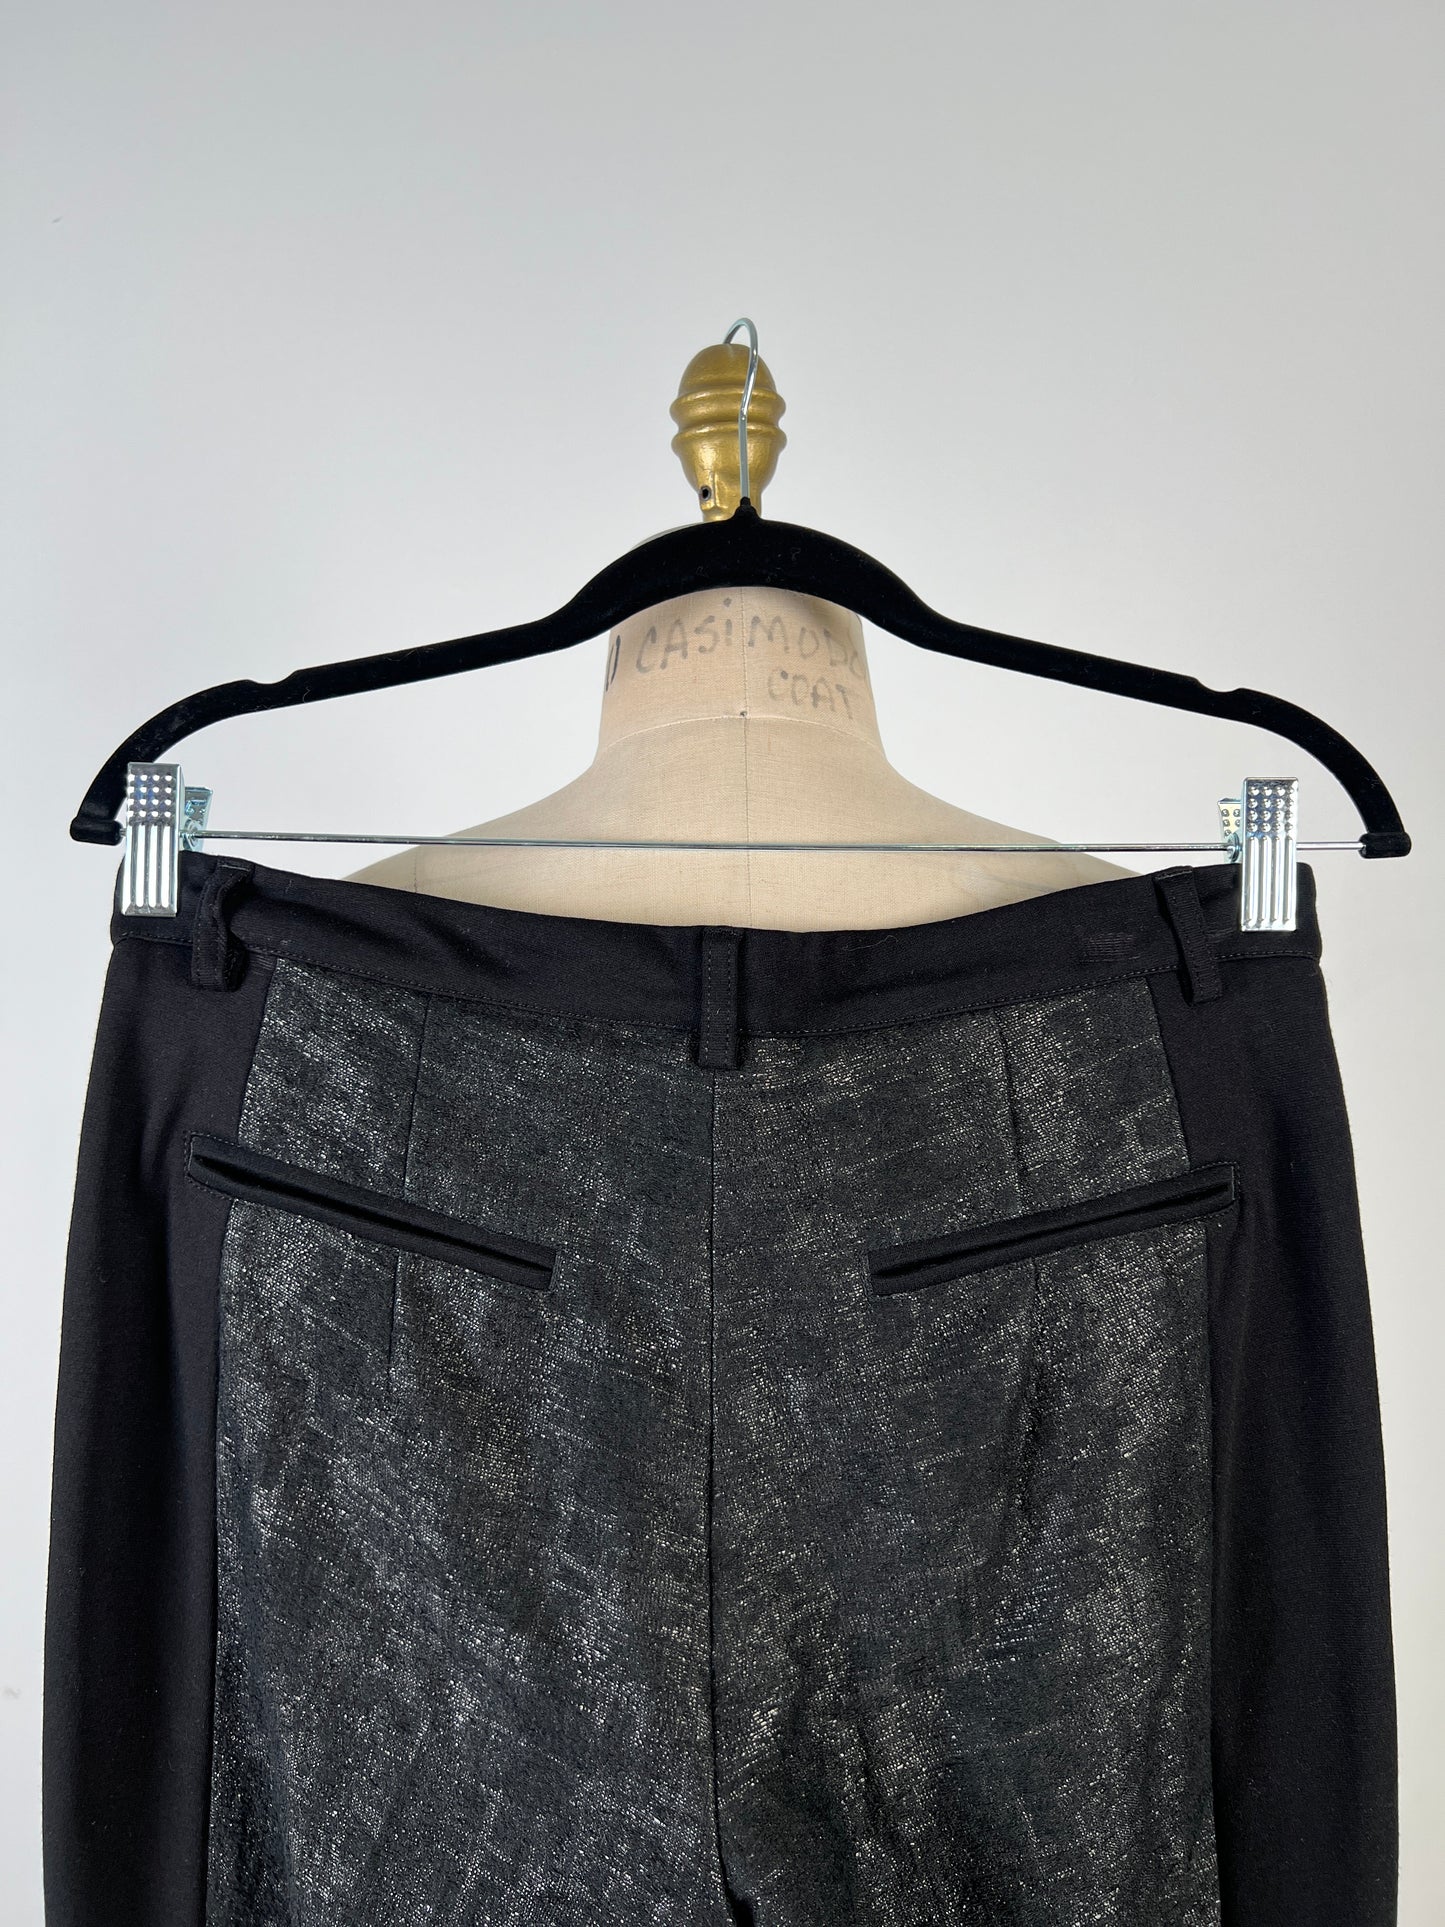 Pantalon bi-matière noir et anthracite (6)